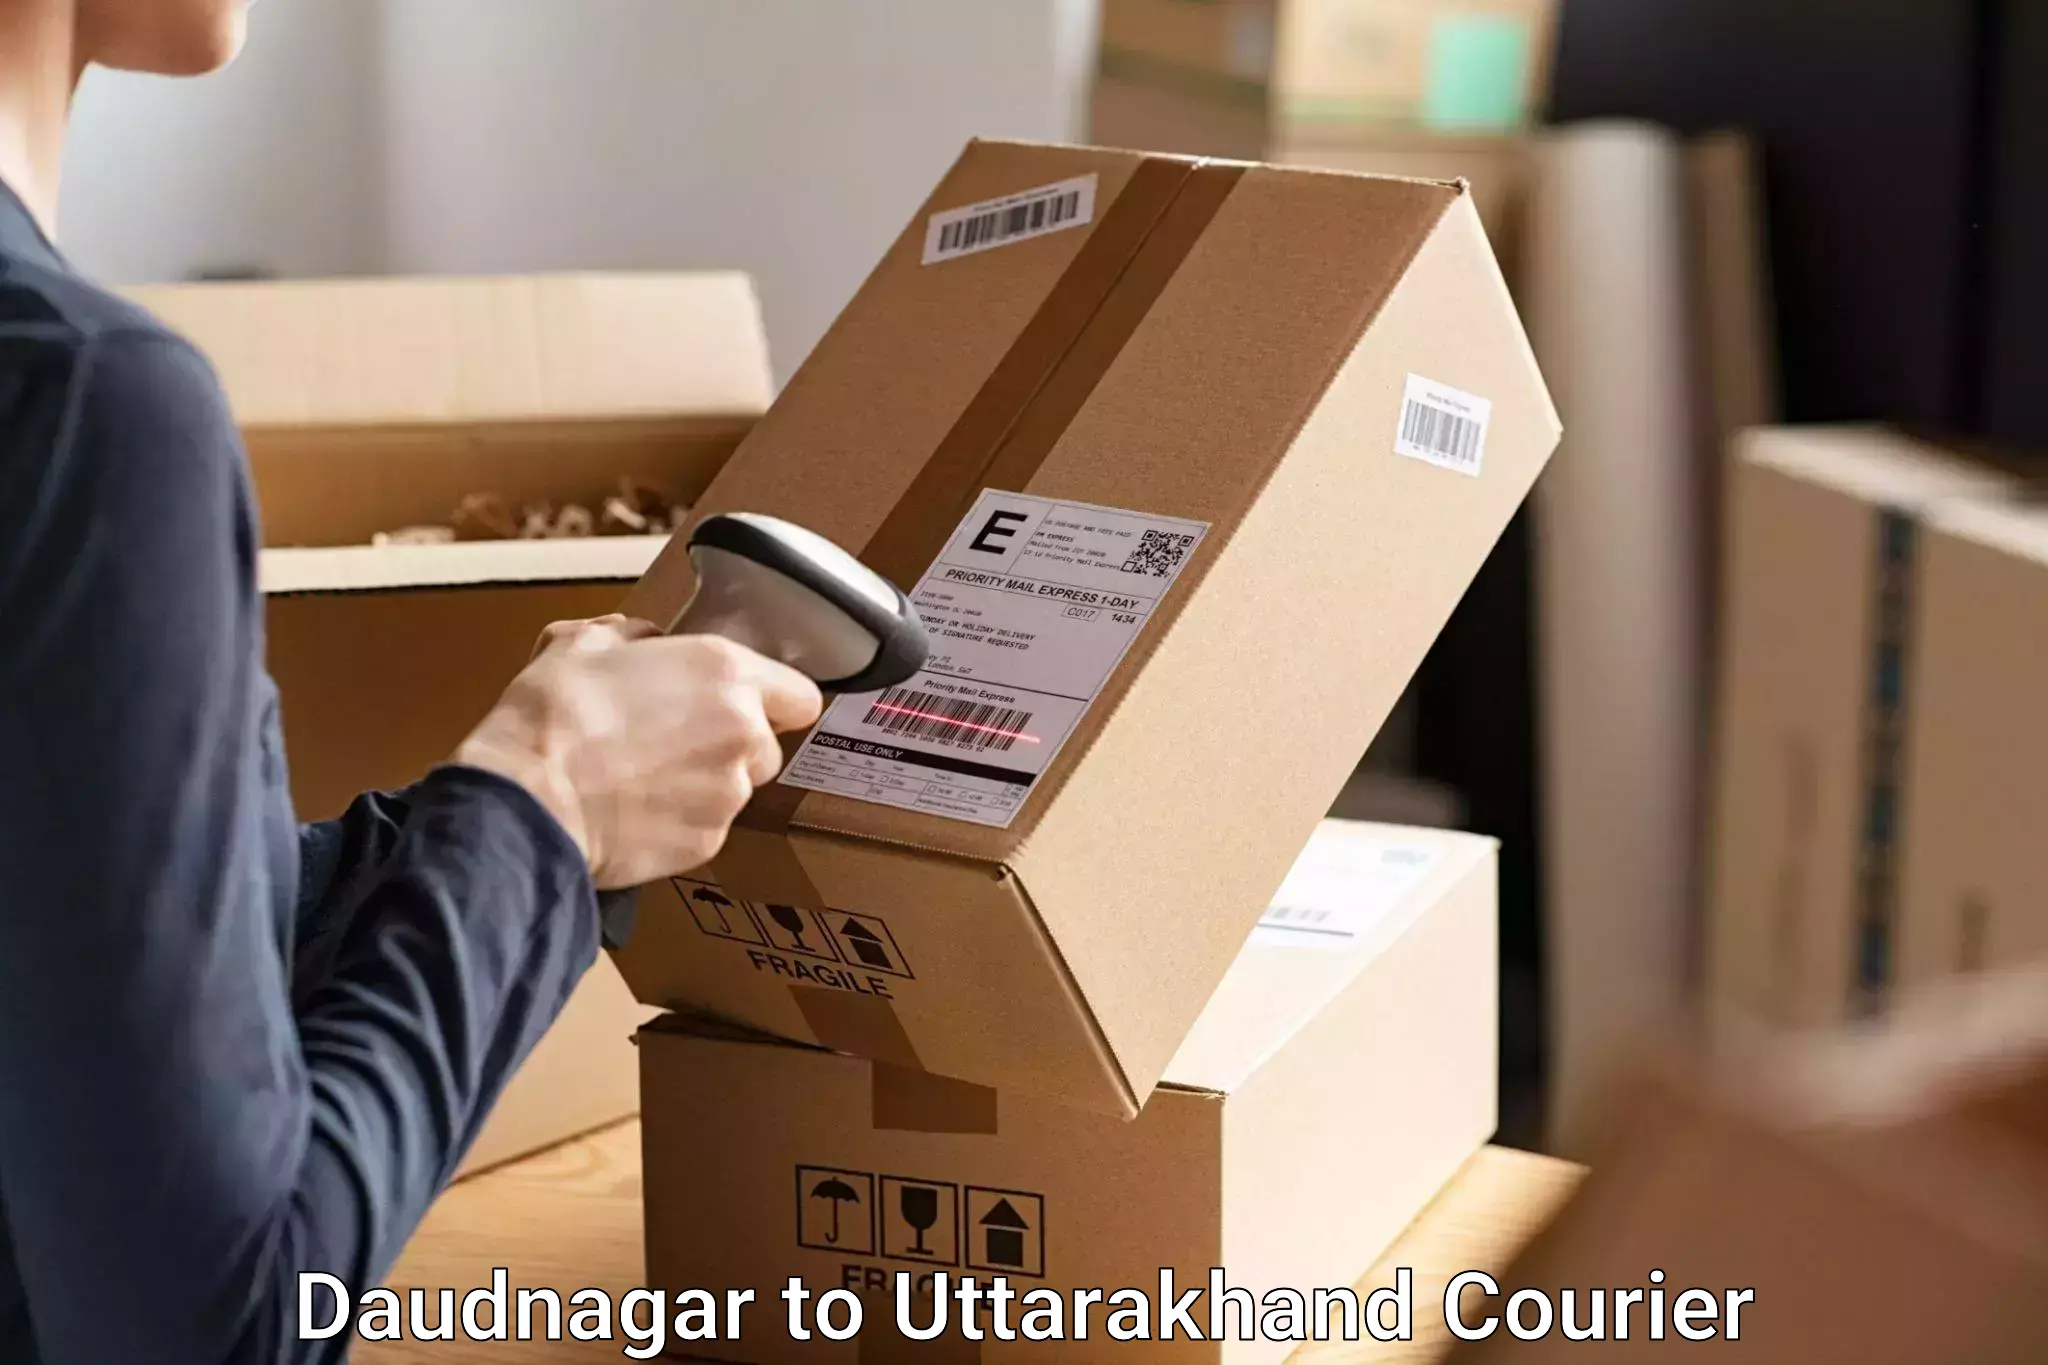 Luggage shipment processing Daudnagar to Nainital